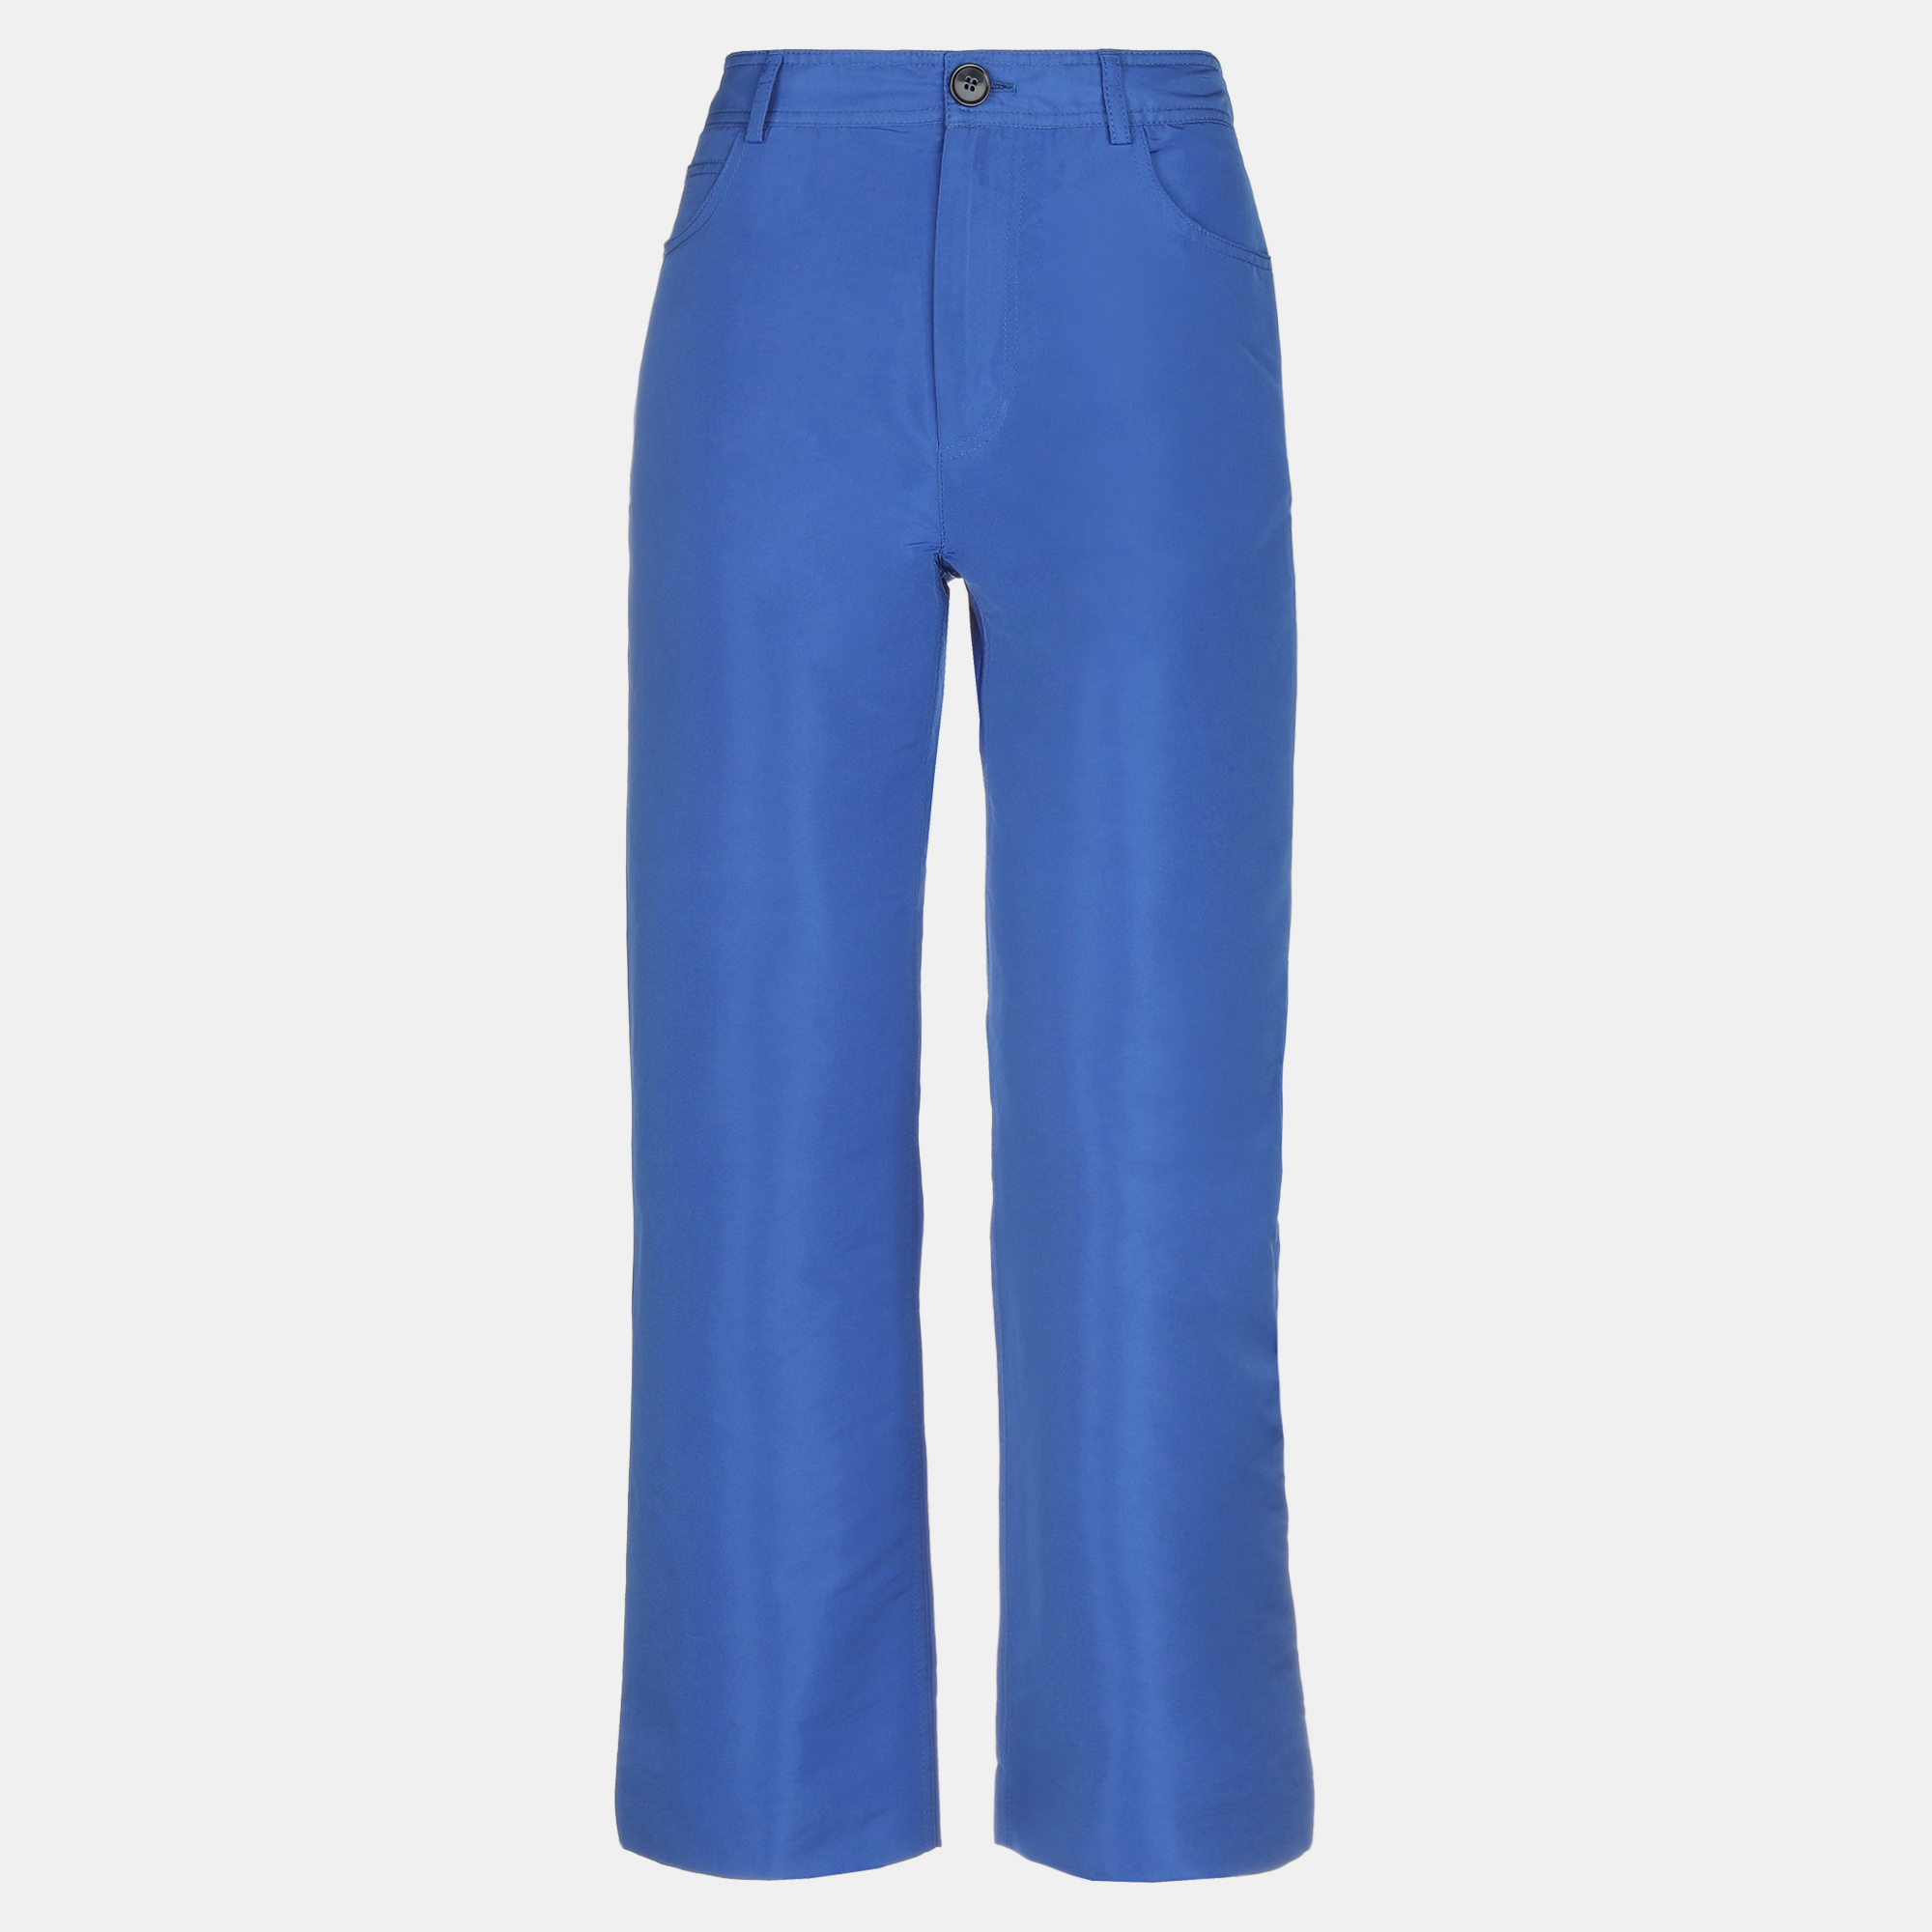 Marni polyester pants 44